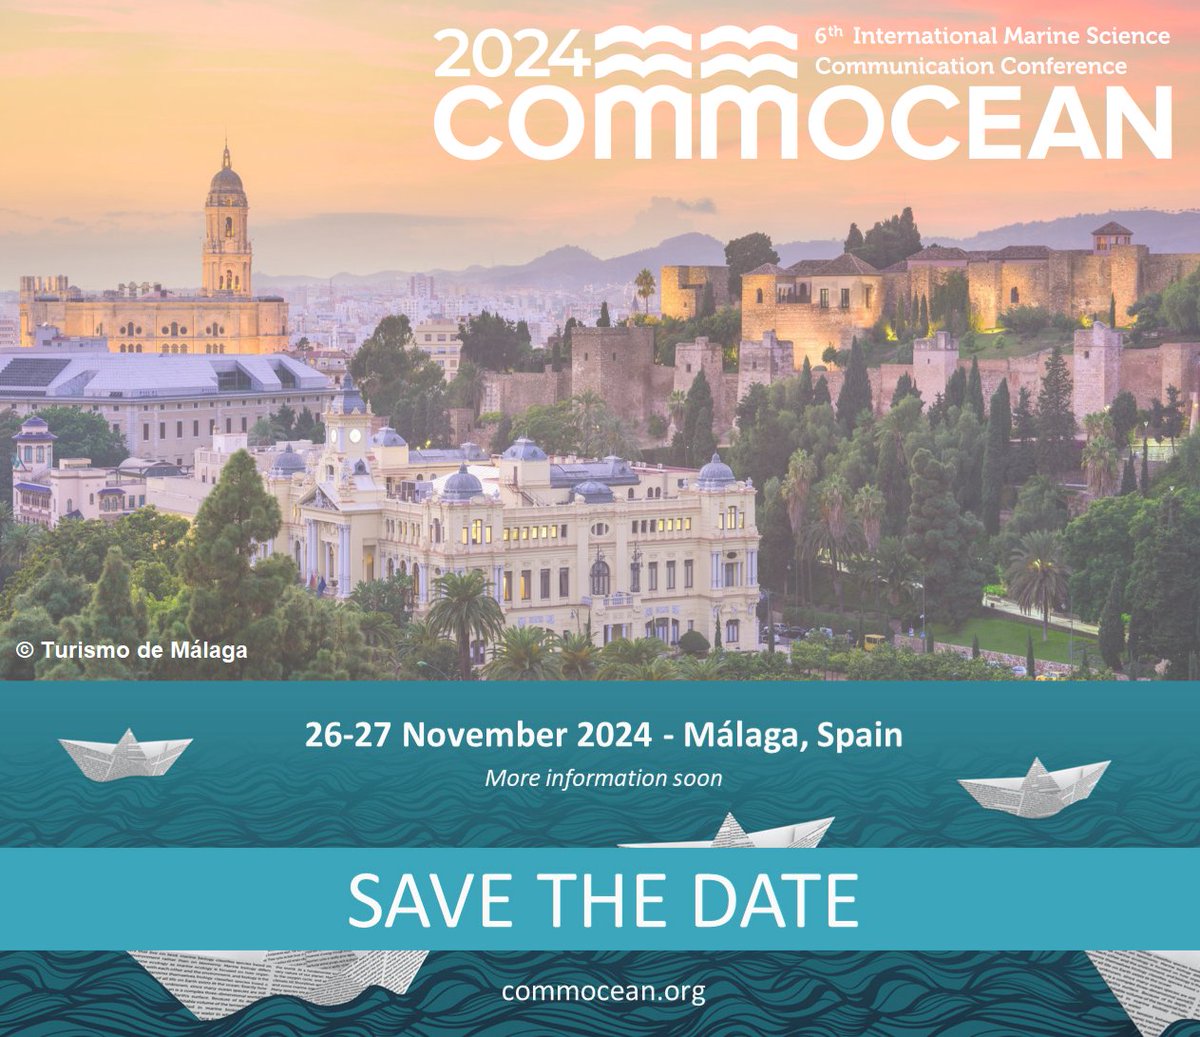 📢 El 26 y 27 de noviembre acogeremos en @IEO_Malaga la principal cita europea de la comunicación en ciencias marinas: @CommOceanConf ⏳ En las próximas semanas daremos más detalles y se abrirá el plazo para presentar trabajos. 📝 ¡No te lo pierdas!